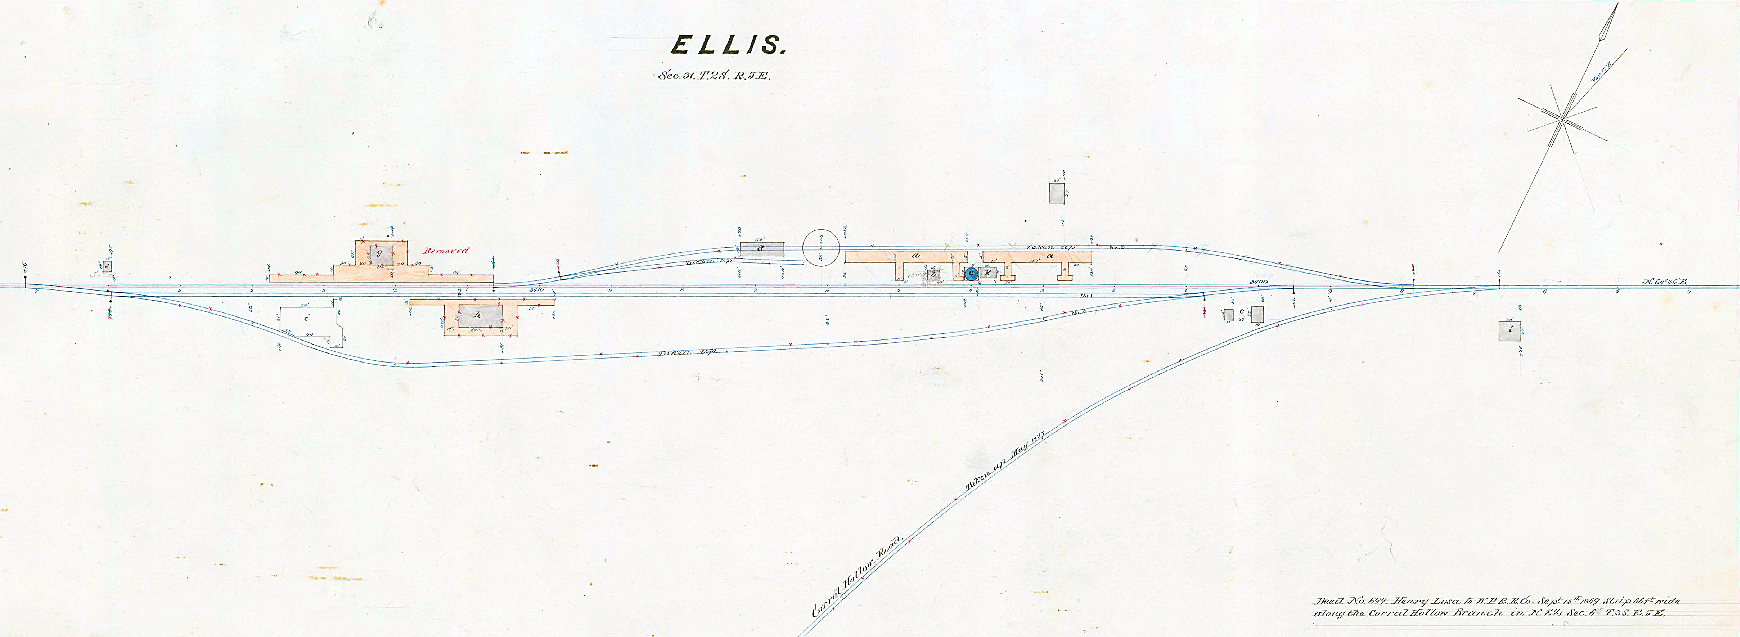 Ellis, California (Plat Map Detail, Circa 1875)